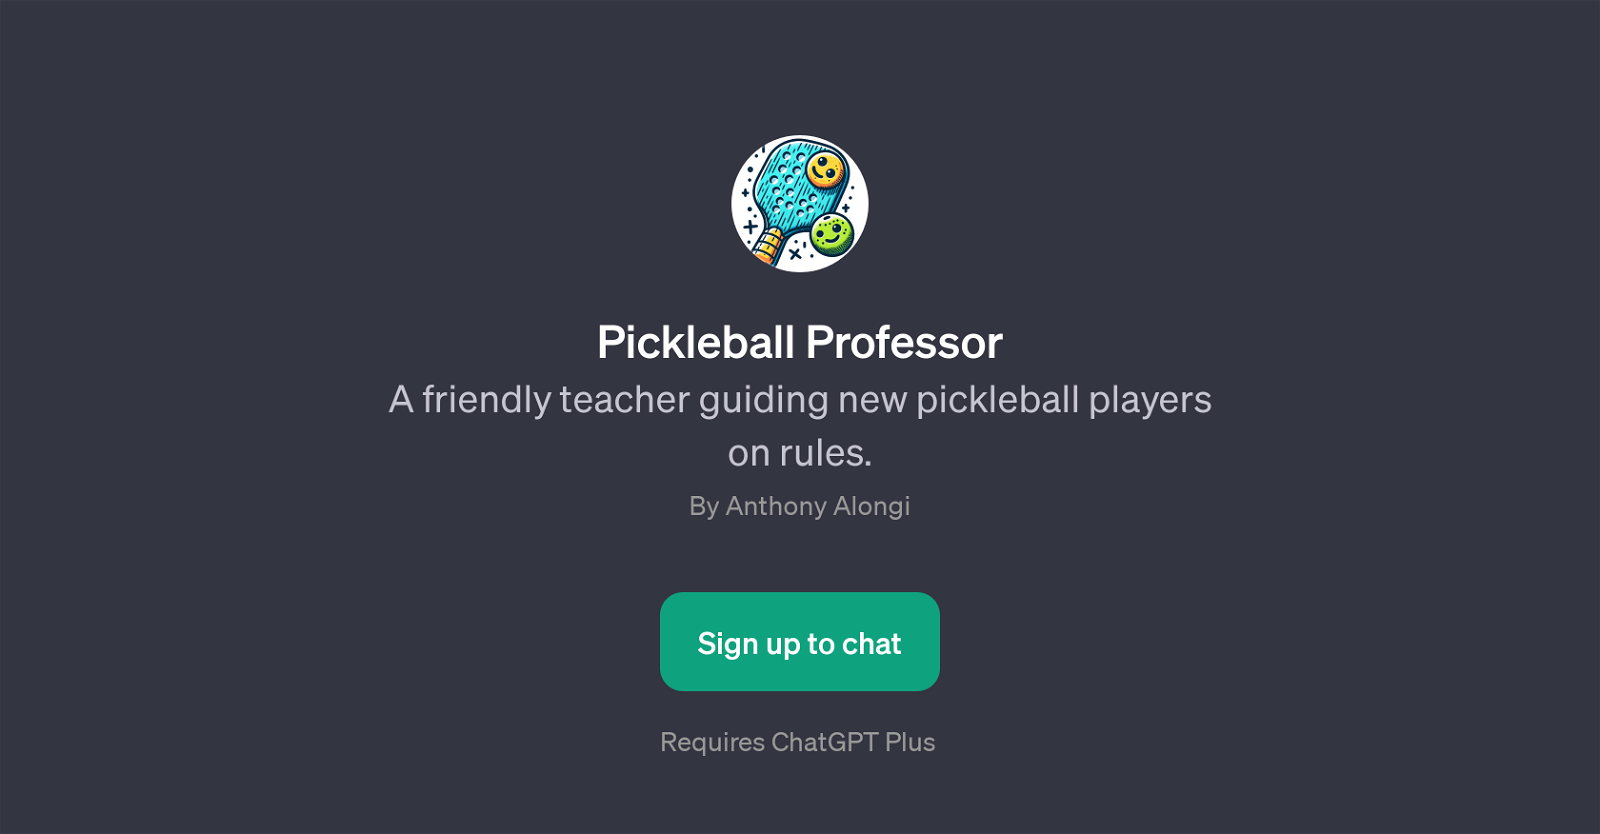 Pickleball Professor website